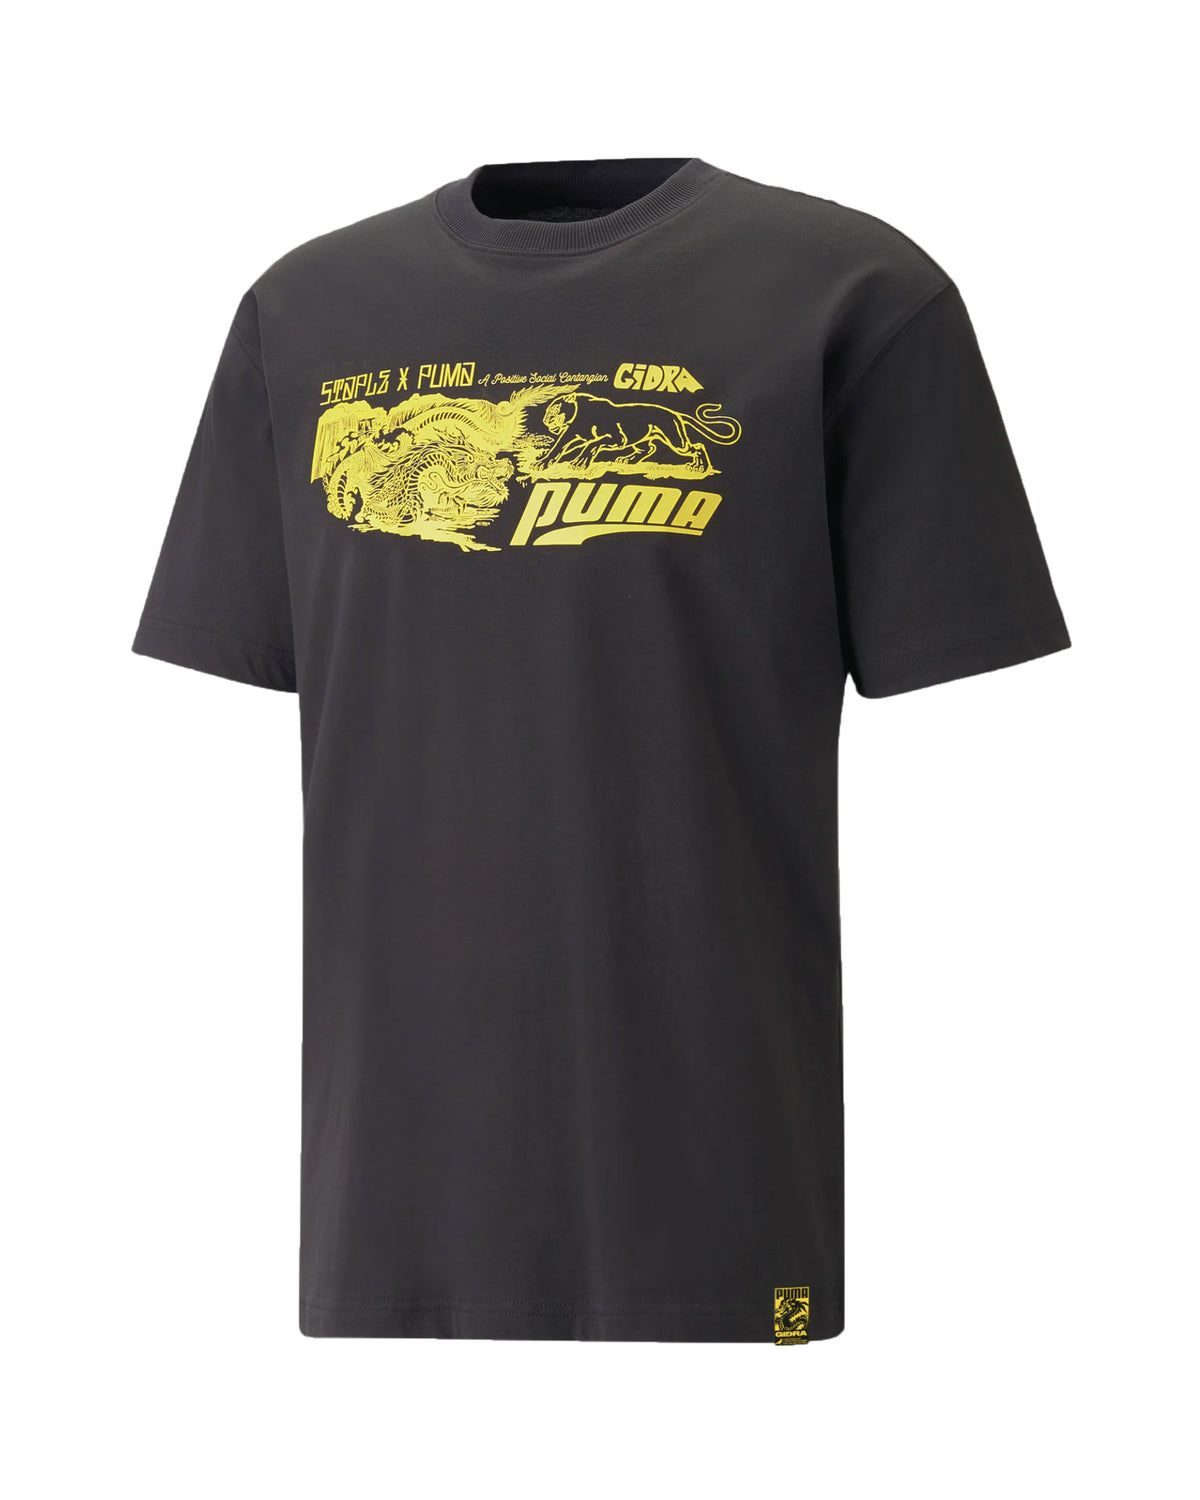 T-Shirt Uomo Puma x Staple T-shirt Nero